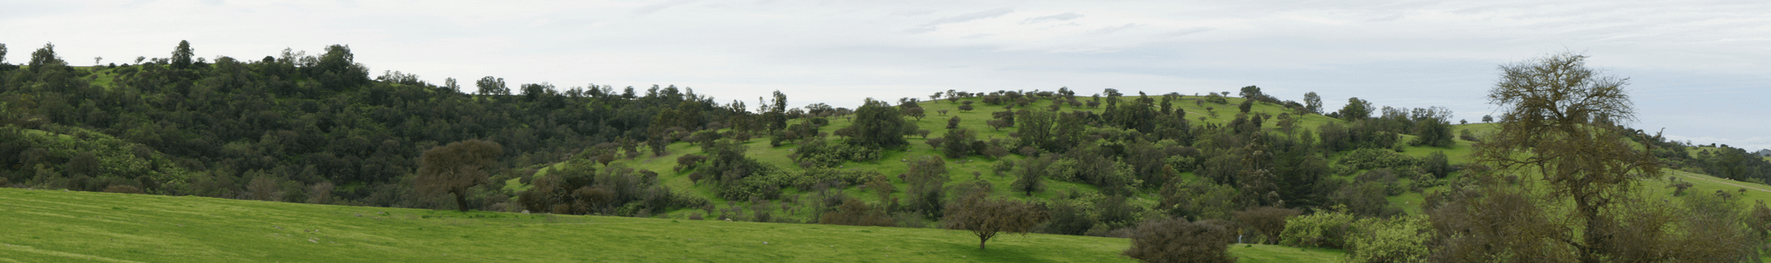 Rapel se caracteriza por una vegetación de clima secano donde predomina el Espino (Acacia caven) Foto © Sofía Ortúzar.